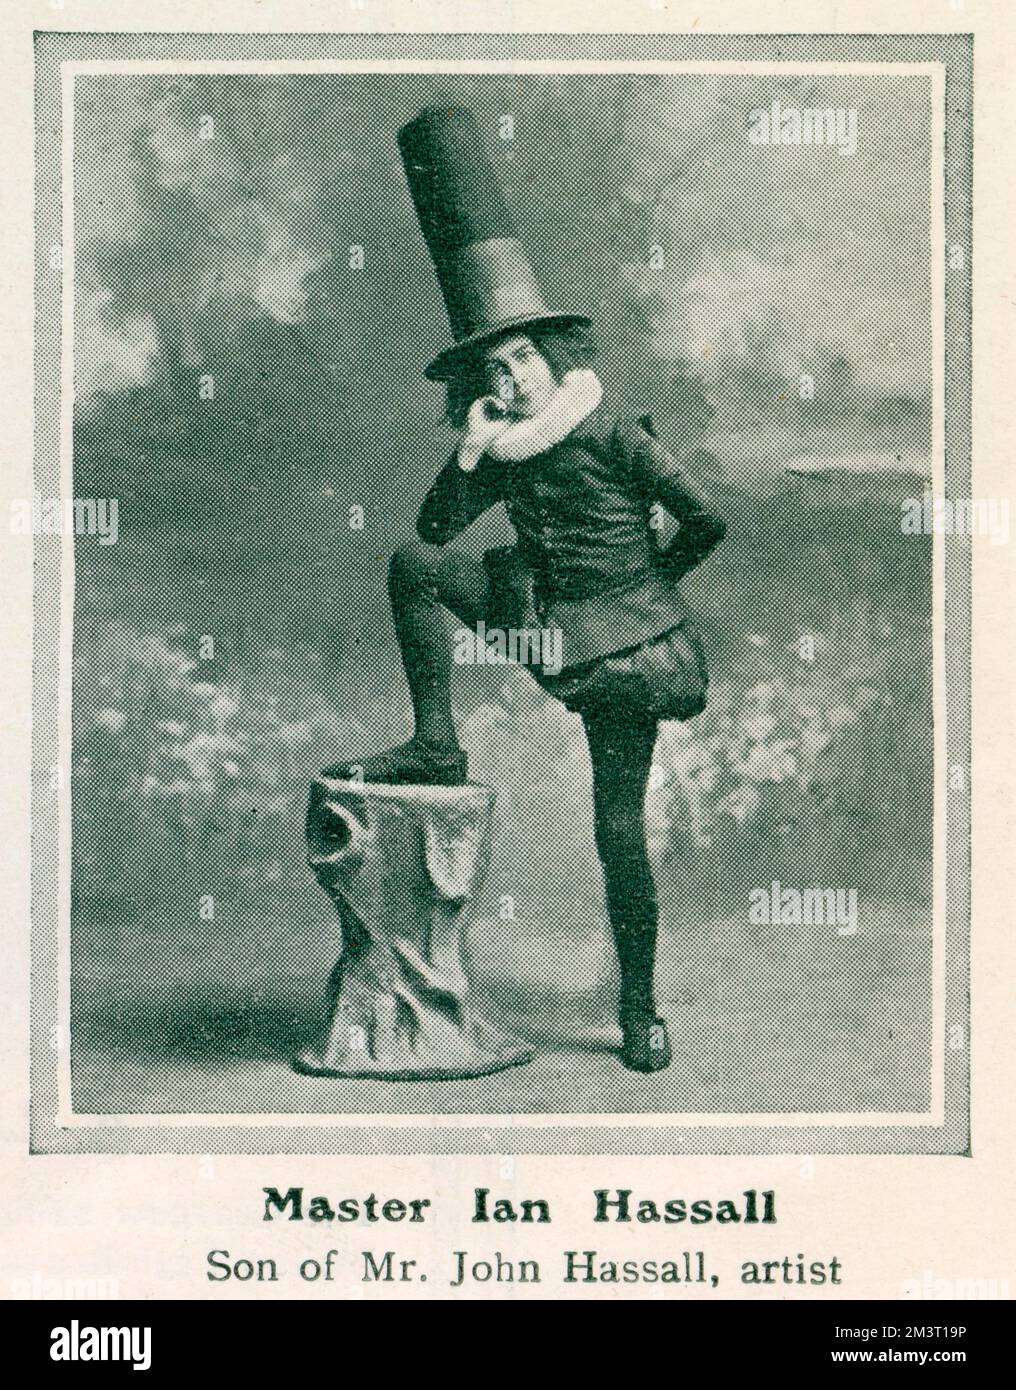 Ian Hassall, der zweite von John Hassalls fünf Kindern, stellte sich im Januar 1911 in seinem Kostüm beim Mansion House Children's Fancy Dress Ball vor. Sein Kostüm ist im humorvollen Tudor-Stil gehalten, der von seinem Vater häufig angenommen wird, insbesondere in seinen Buchillustrierungen. Stockfoto